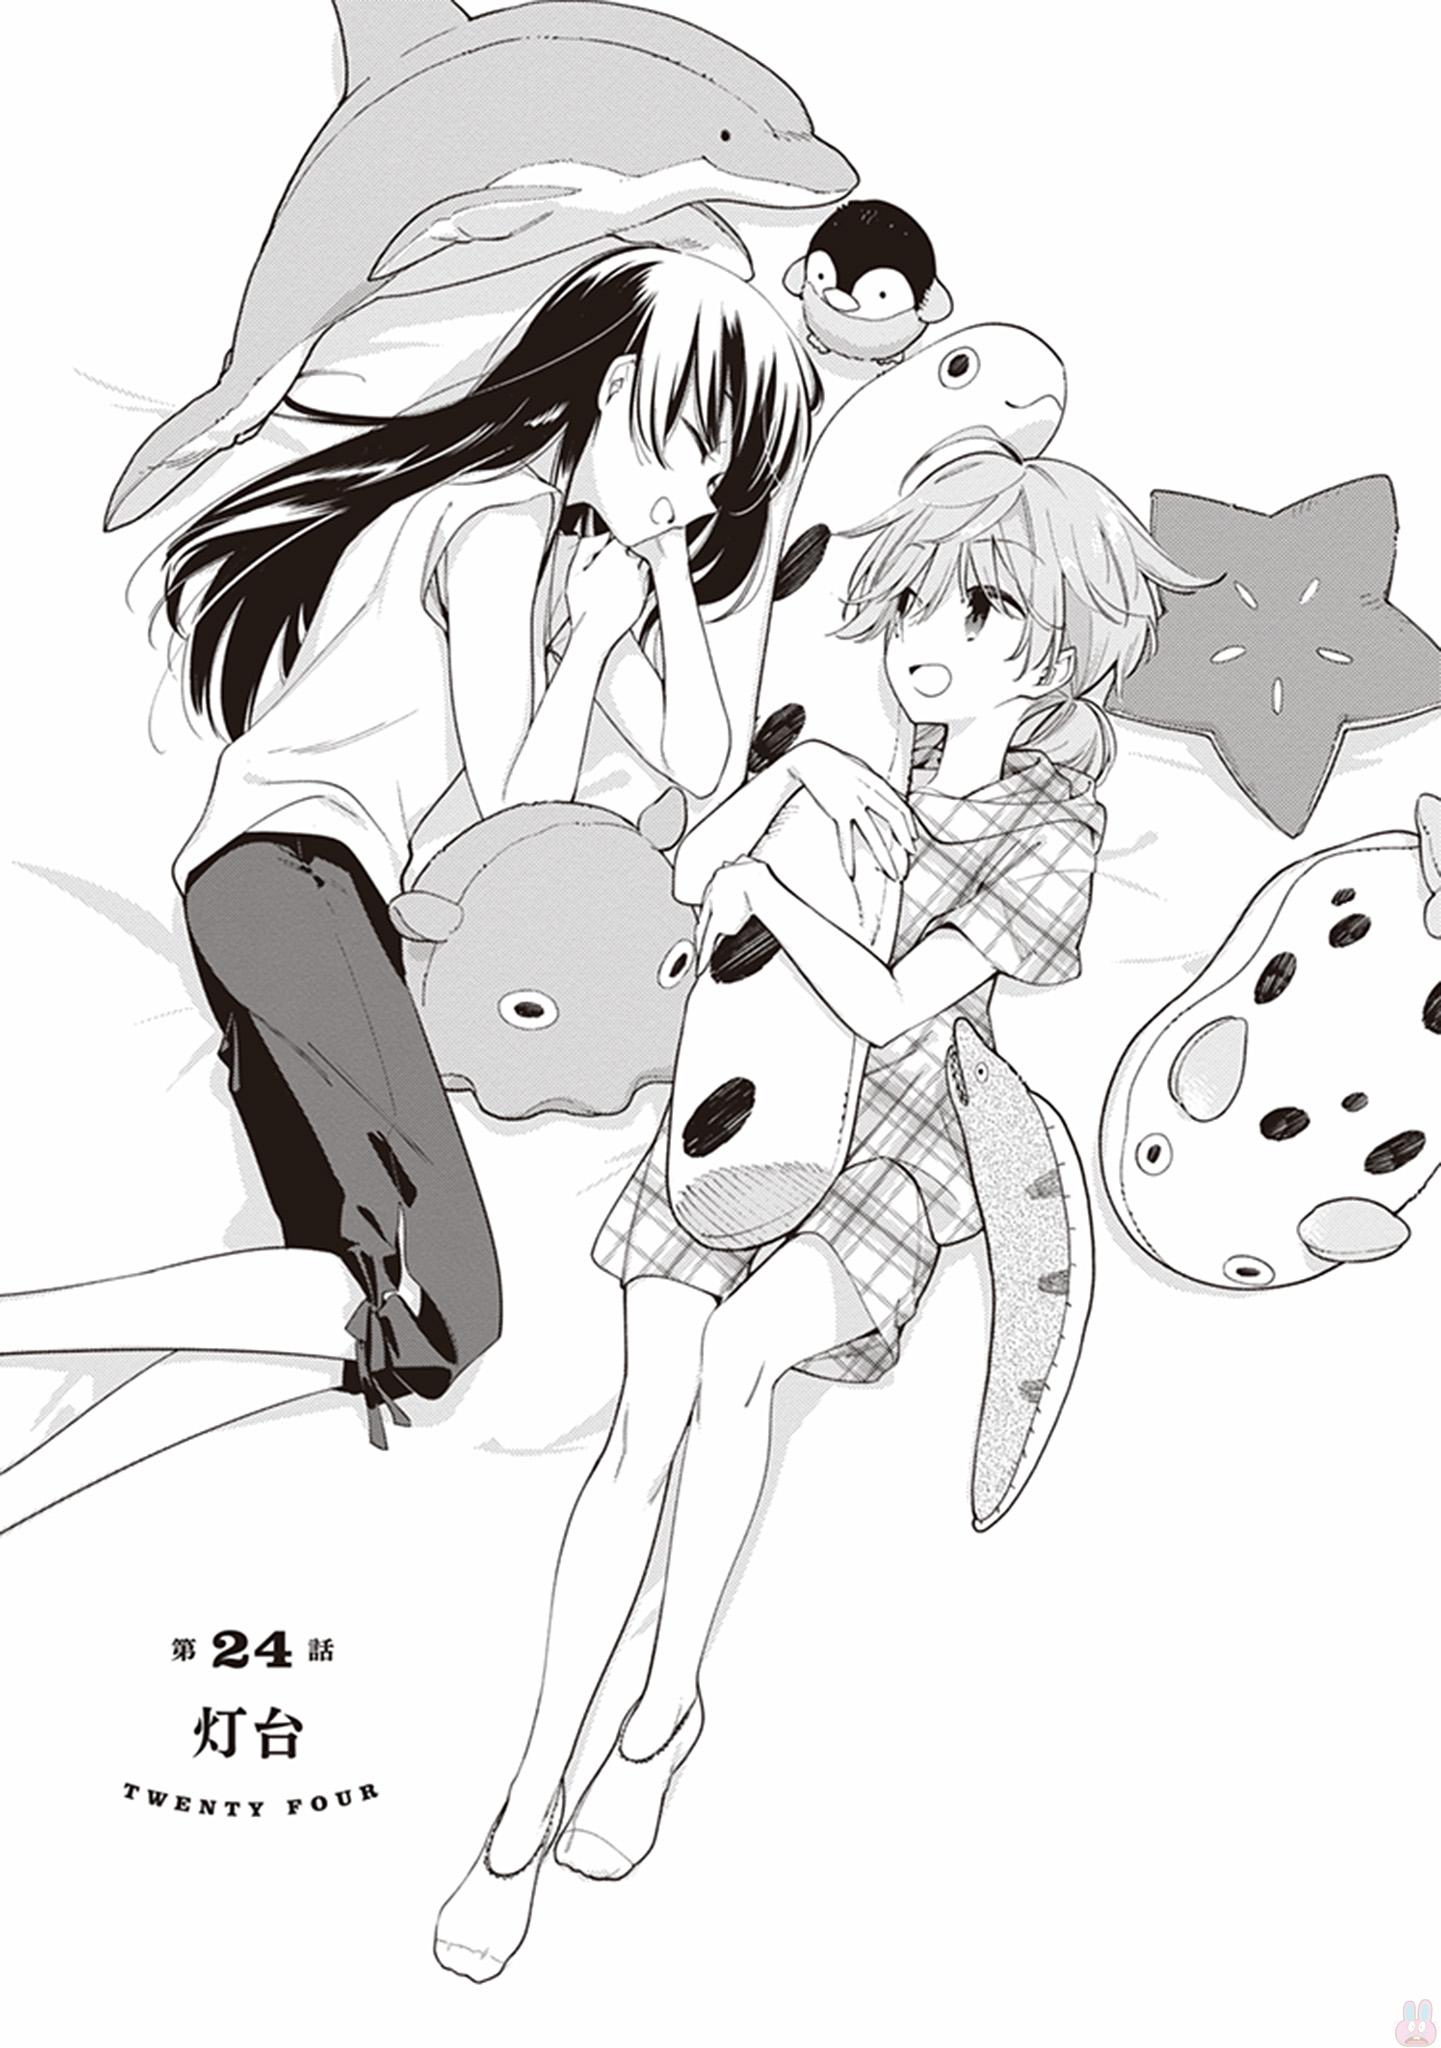 Yagate Kimi ni Naru (Bloom Into You) color page : r/manga